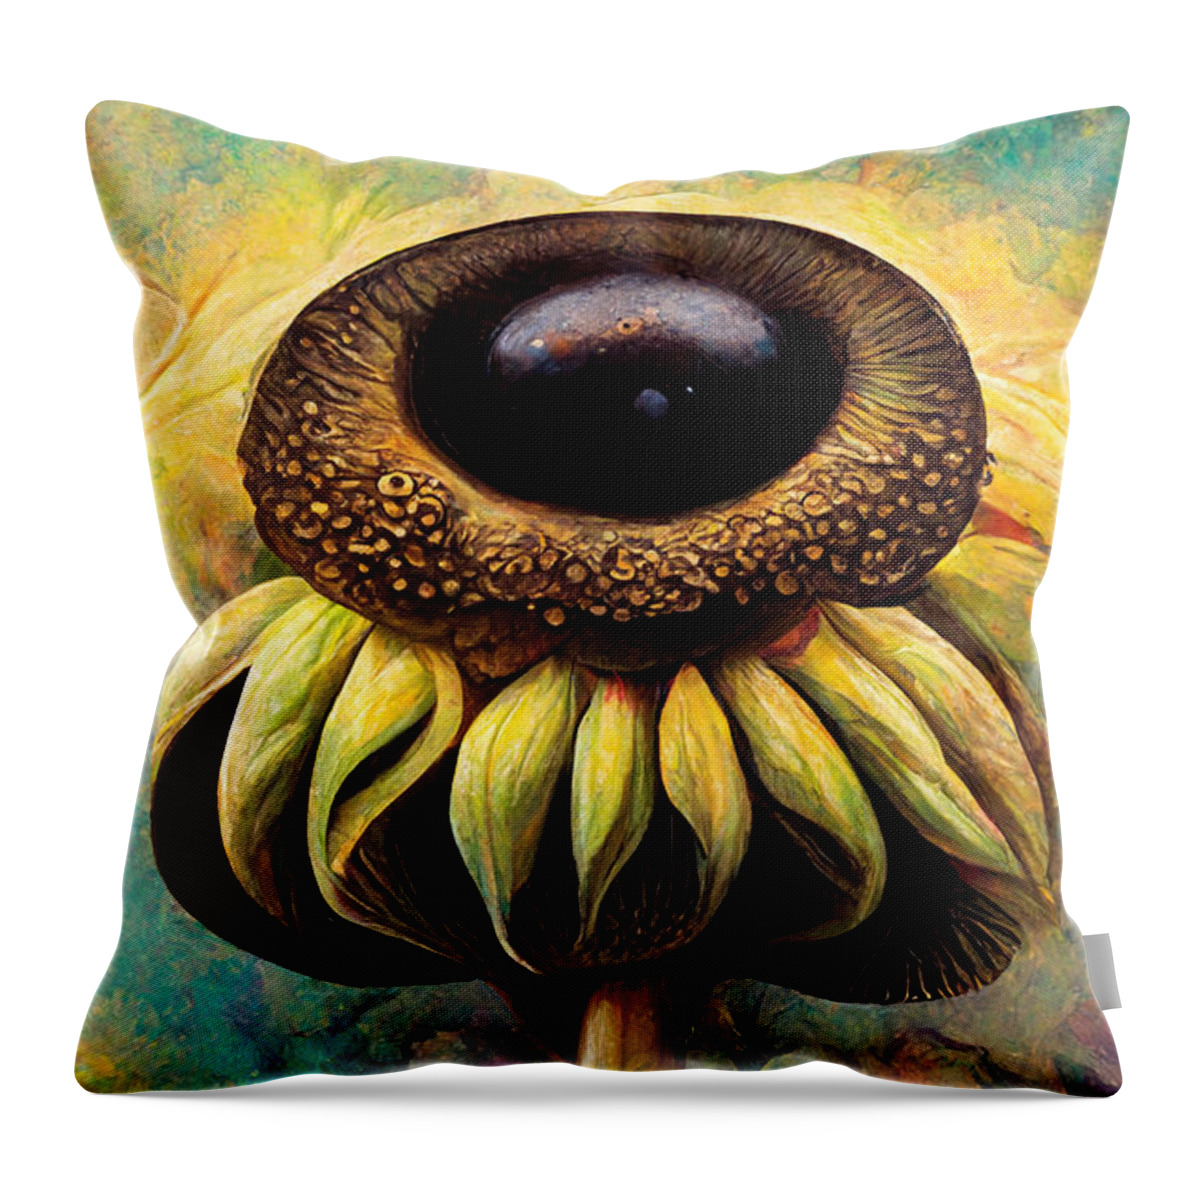 Sunflower Throw Pillow featuring the digital art Sunflower mushrooms #1 by Sabantha